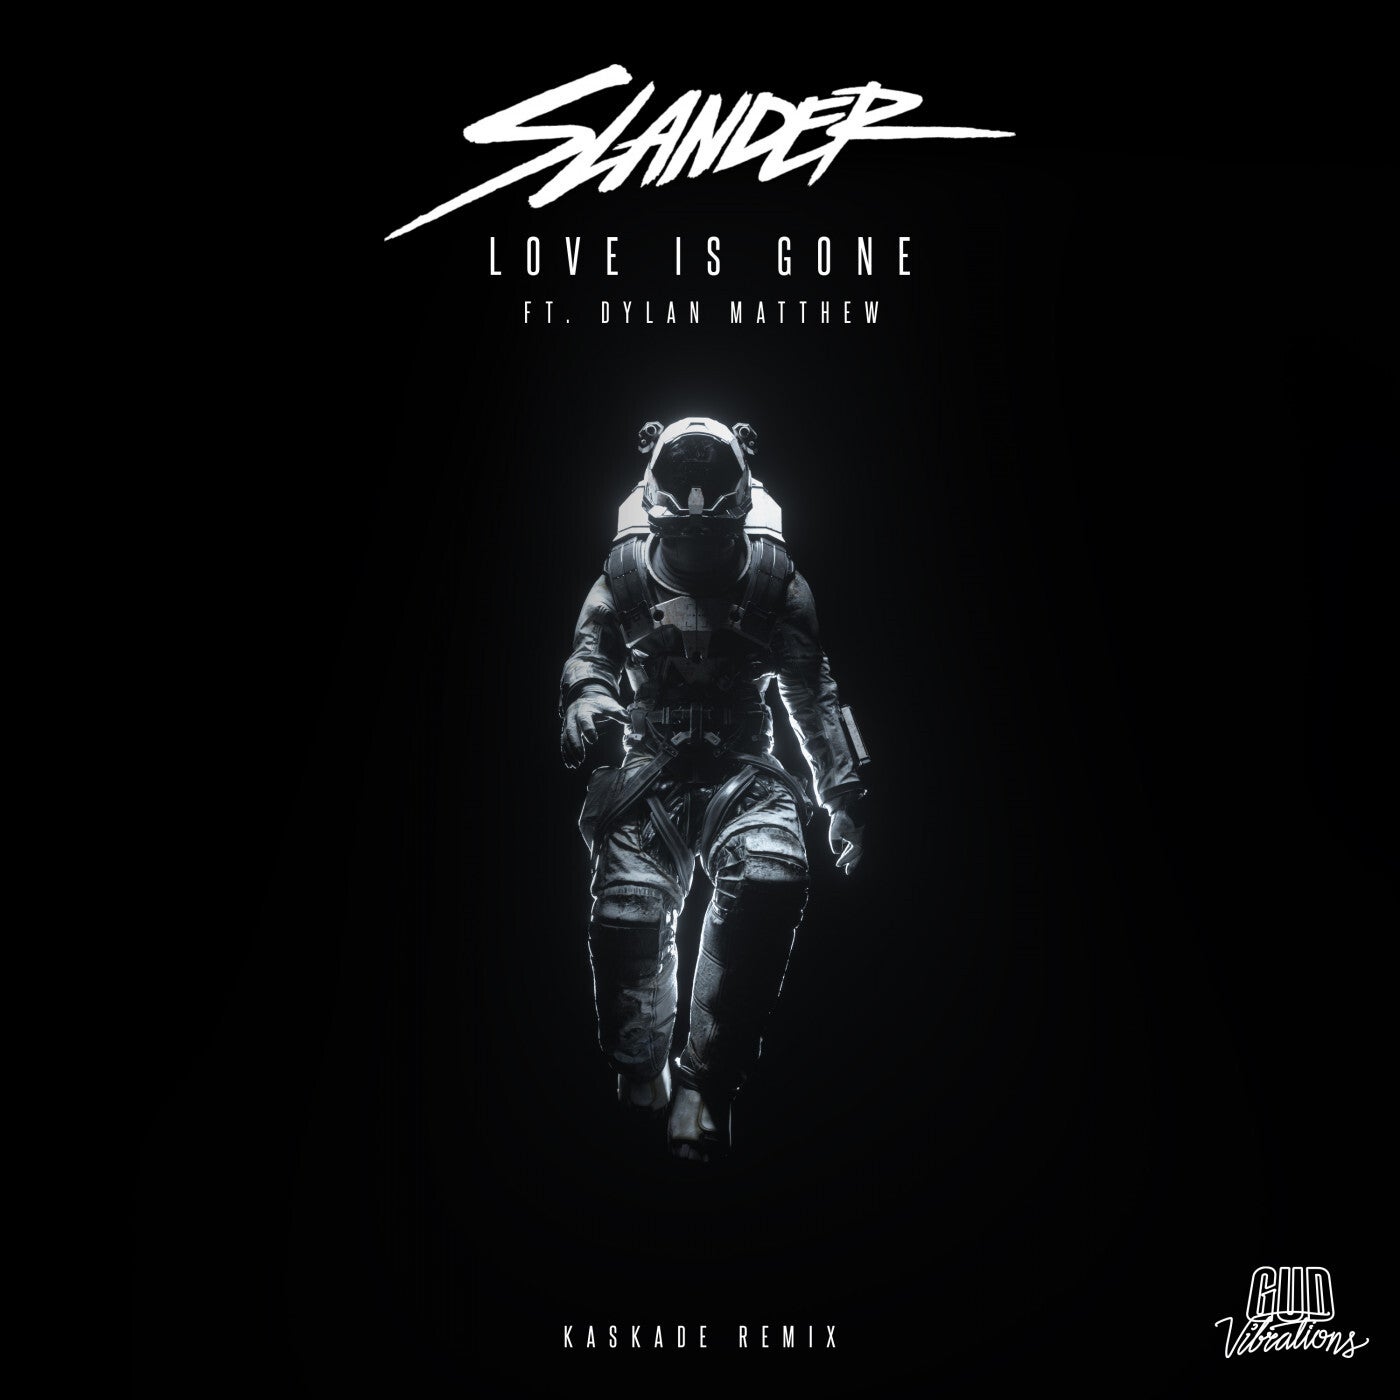 Slander feat. Dylan Matthew - Love Is Gone (Kaskade Extended Remix)